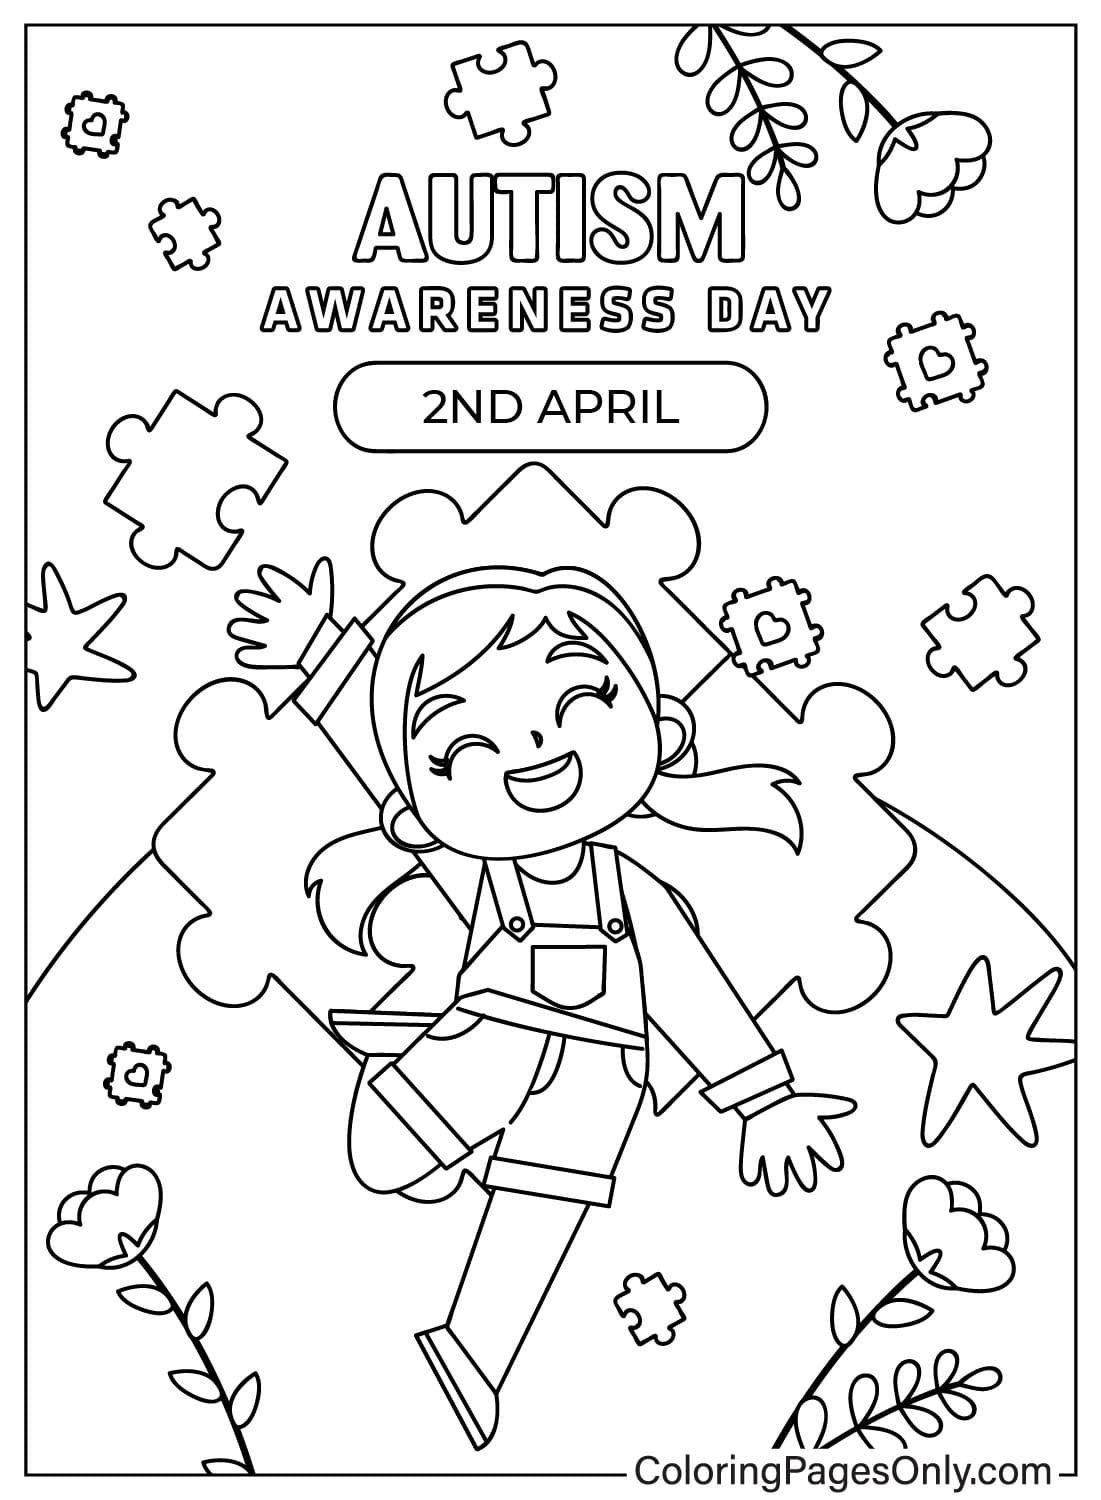 Malvorlage zur Autismus-Bewusstseinszeichnung vom Welt-Autismus-Bewusstseinstag zeichnen